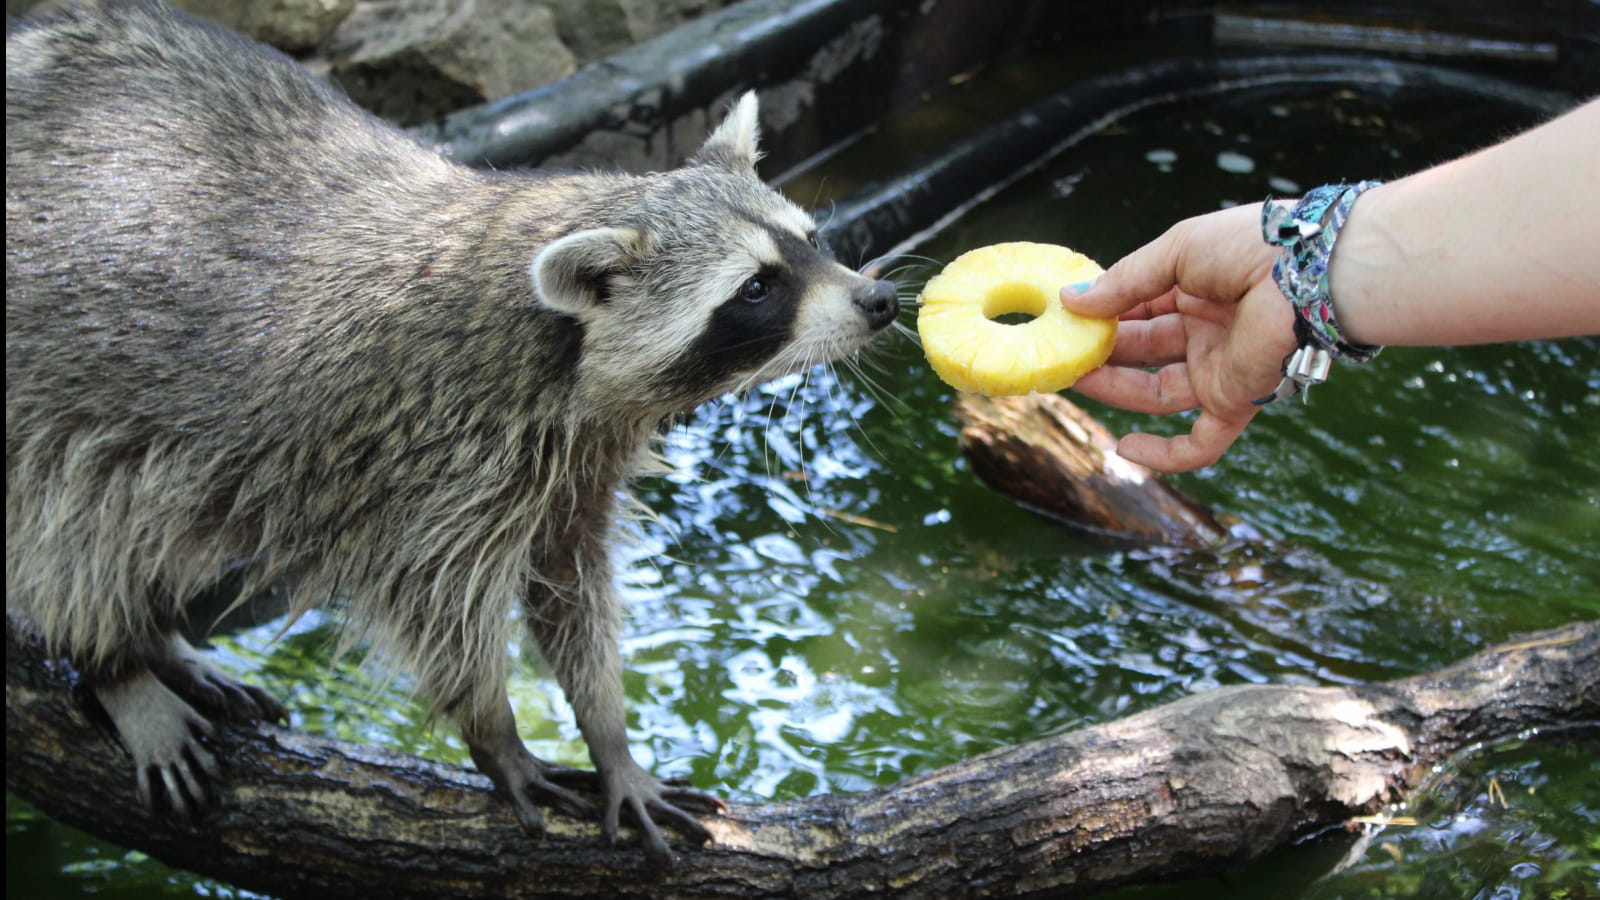 Au Parc Argonne Découverte les ratons laveurs apprécient les fruits frais